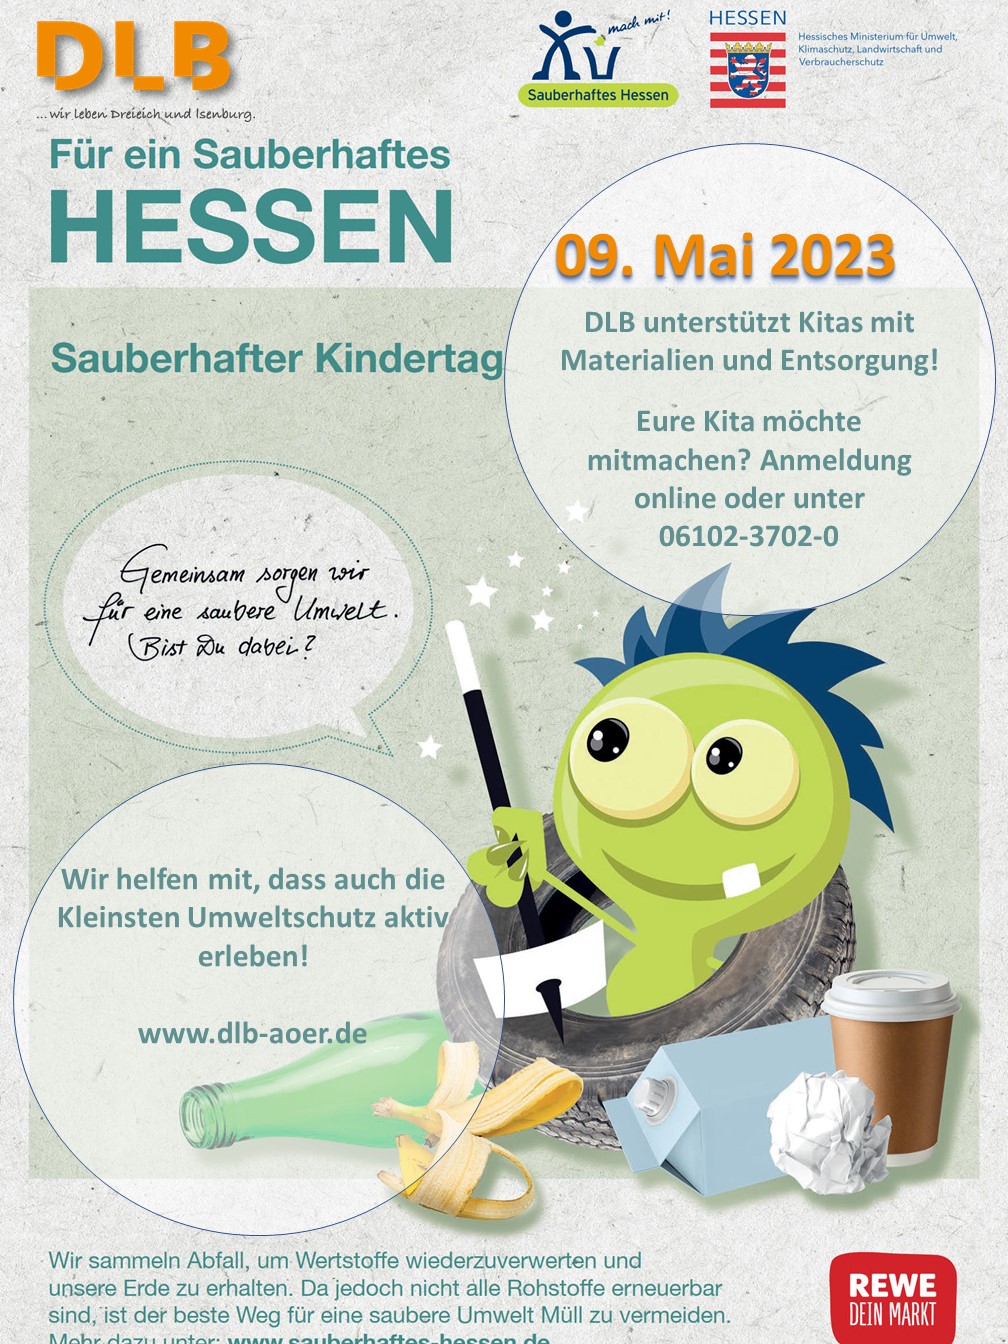 Plakat zum Sauberhaften Kindertag. Termin 09. Mai 2023. Zu sehen ist ein grünes Comic-Monster mit einem Zauberstab. Rundherum befindet sich verschiedener Müll.